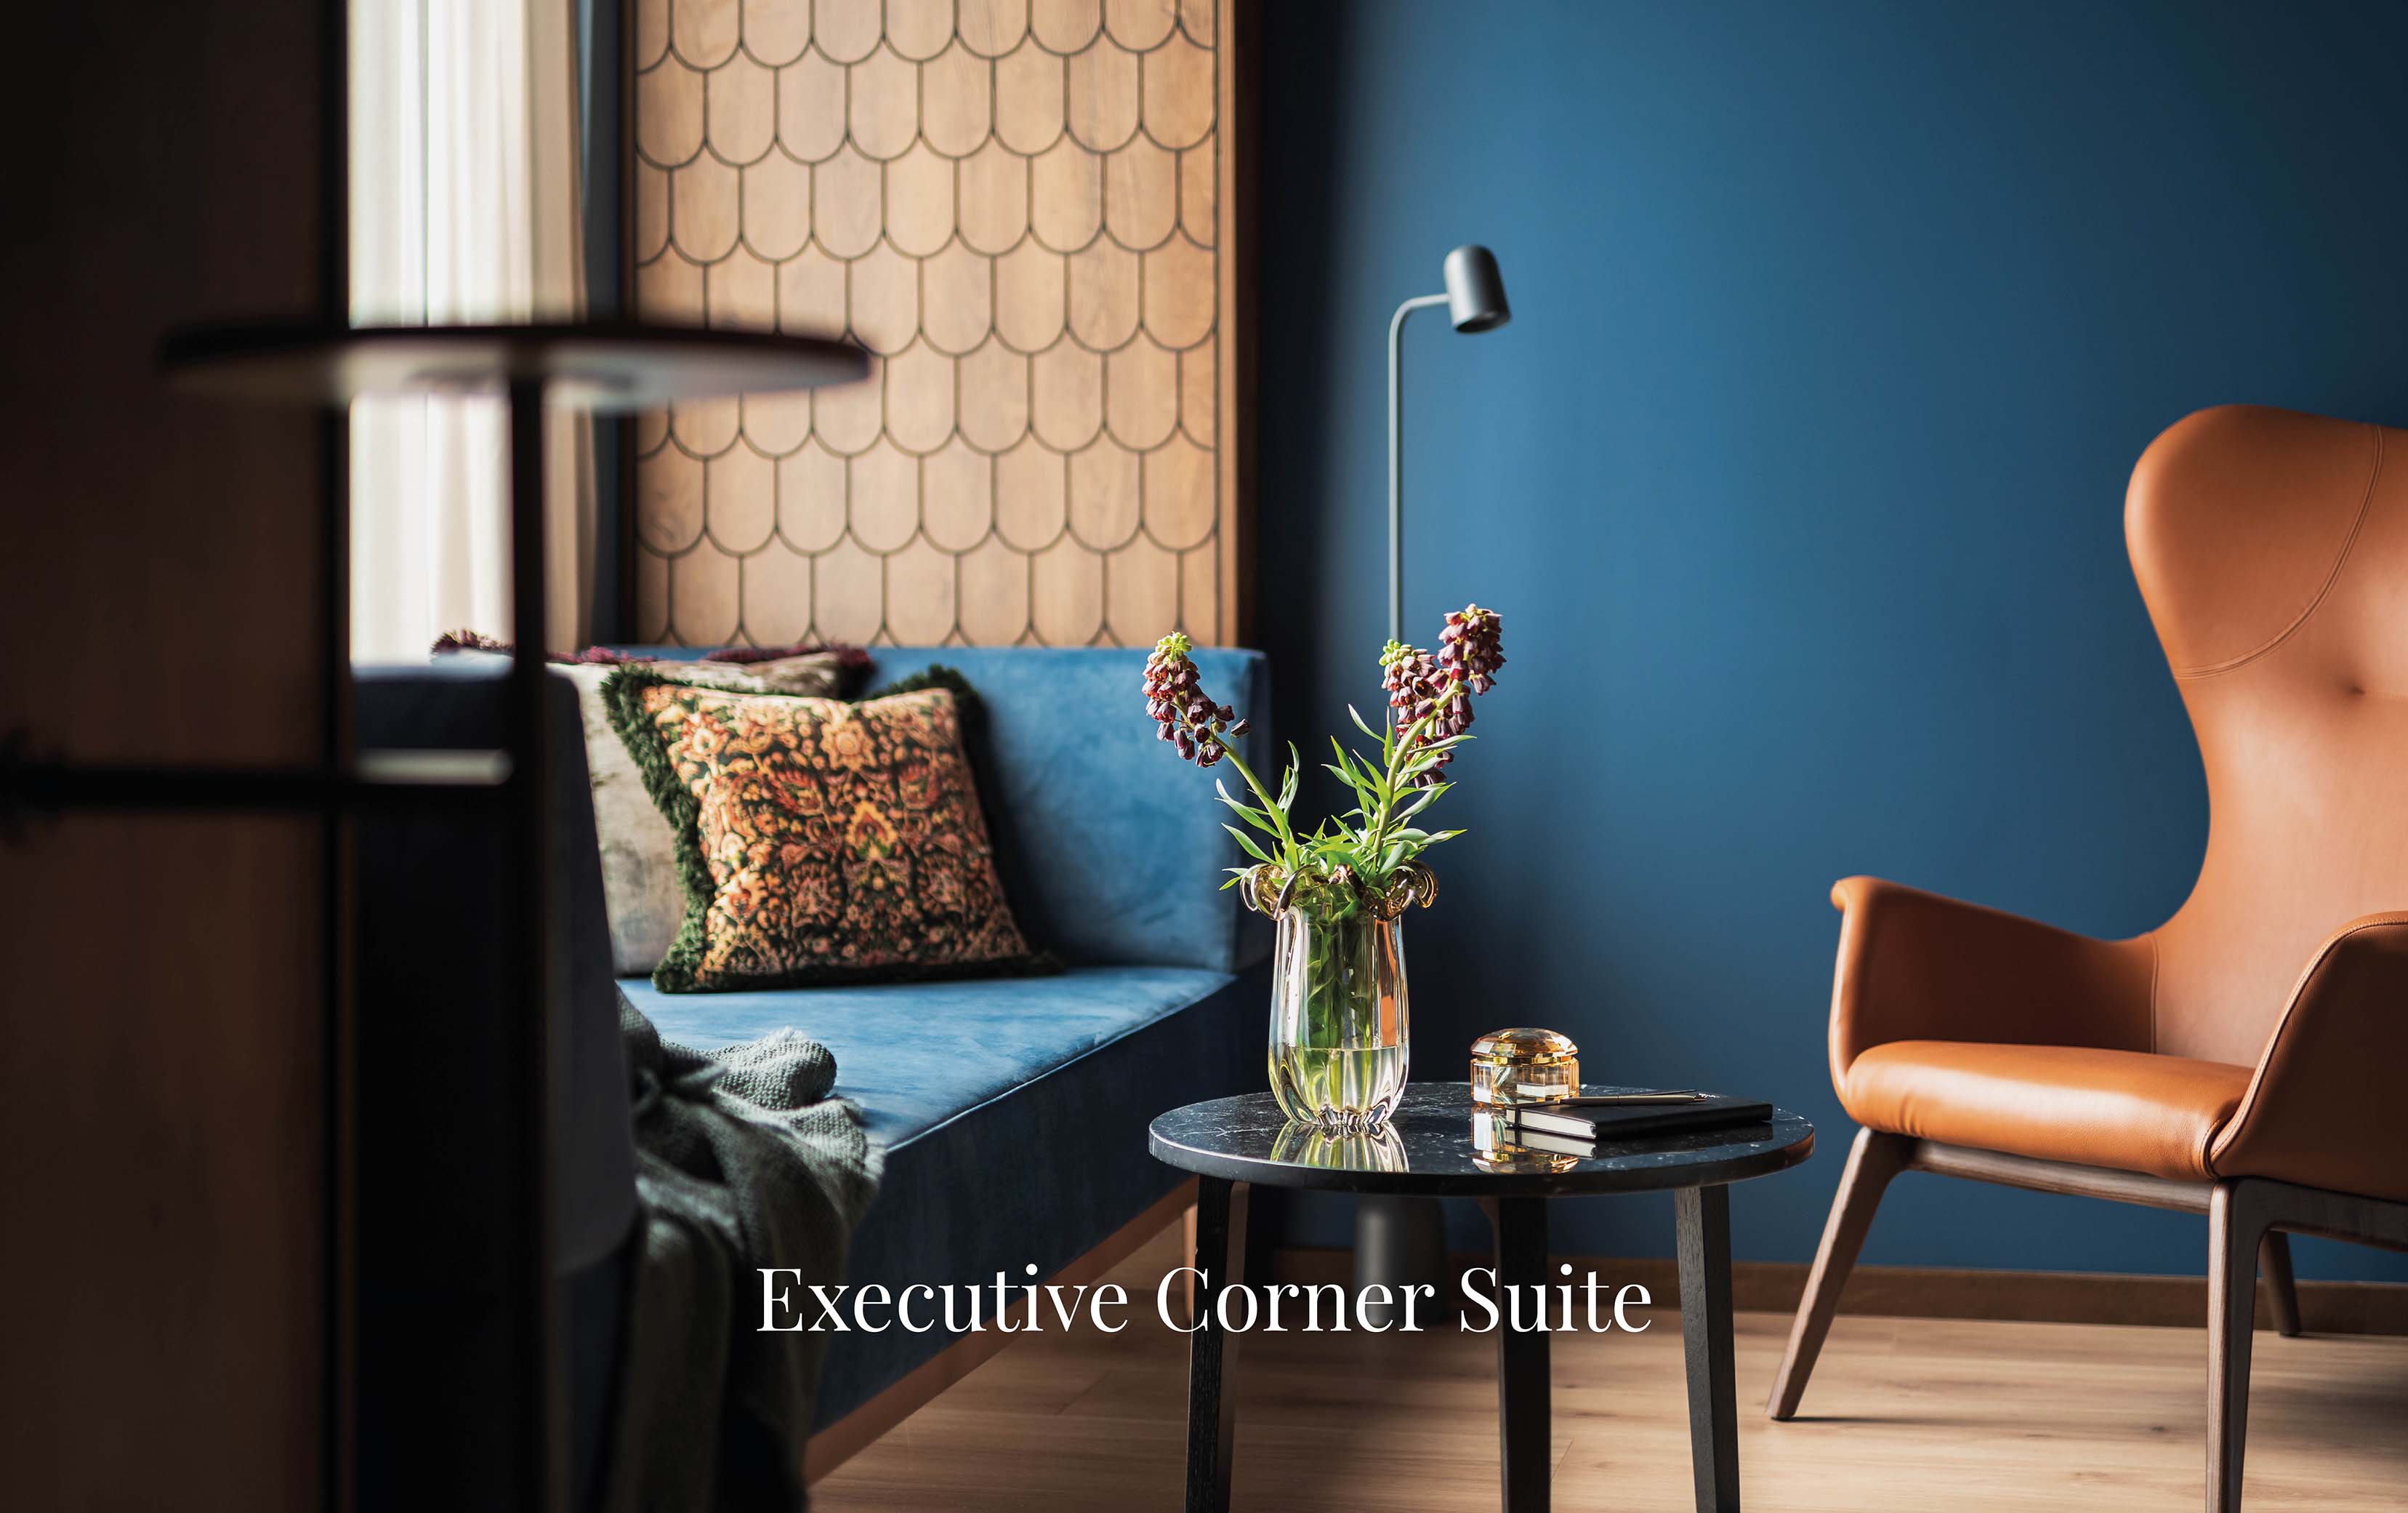 Executive Corner Suite